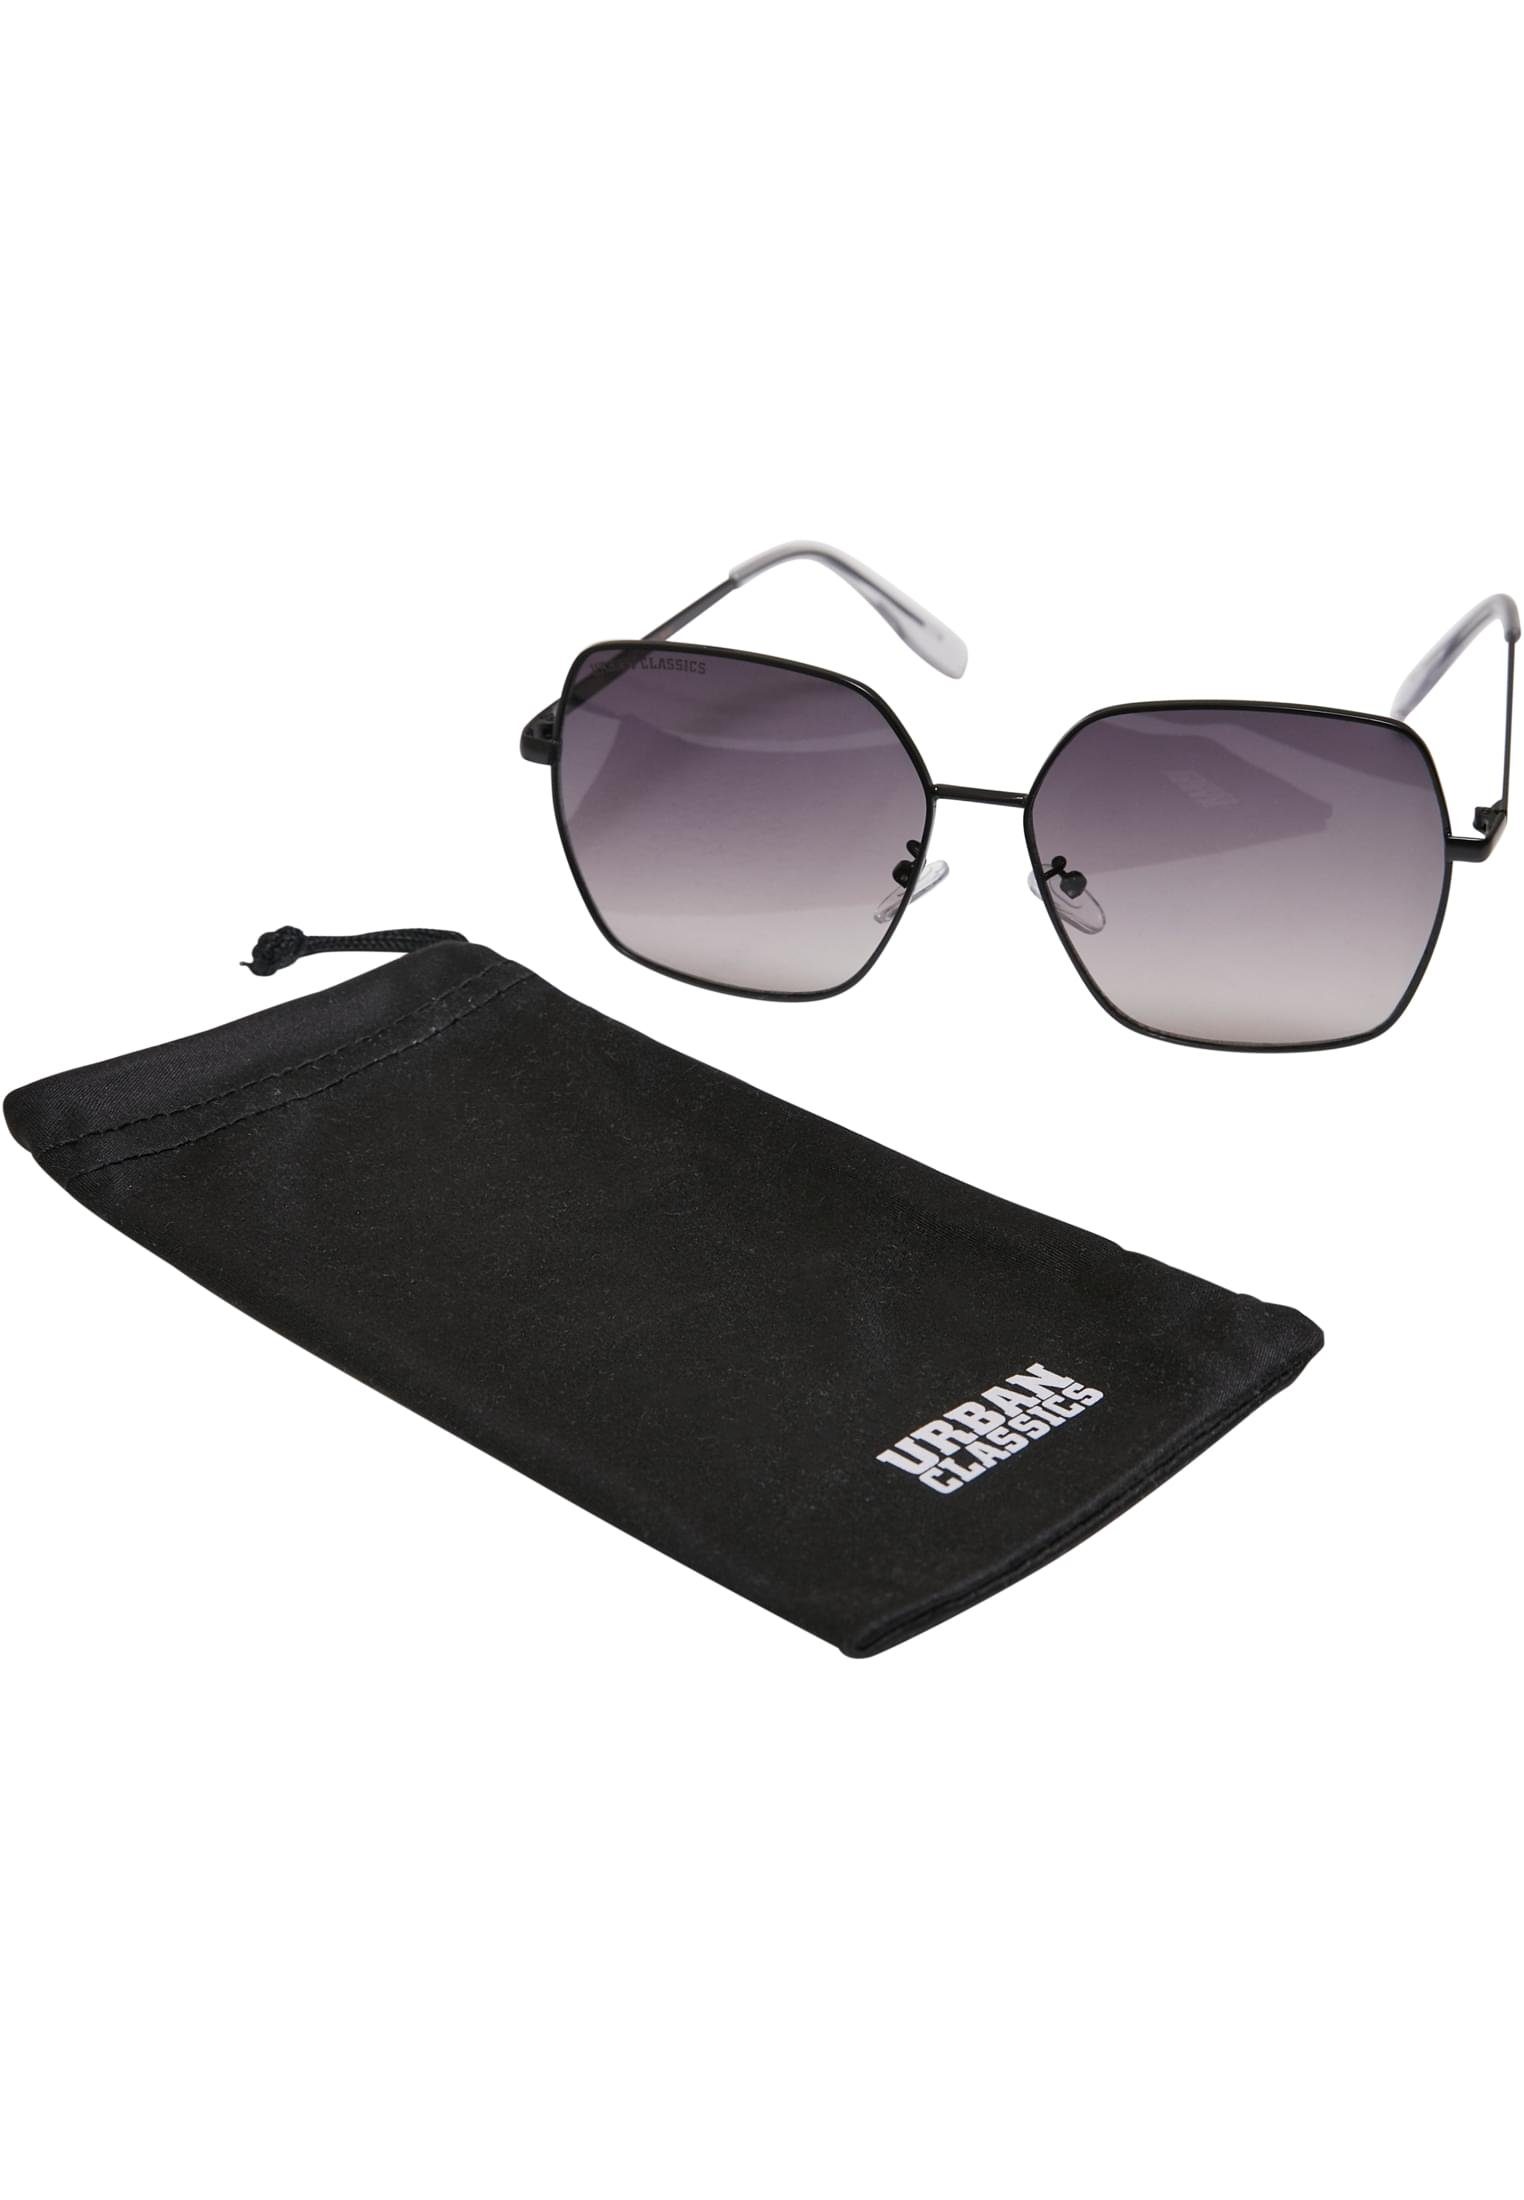 URBAN CLASSICS Sonnenbrille Unisex Sunglasses Indiana black/black